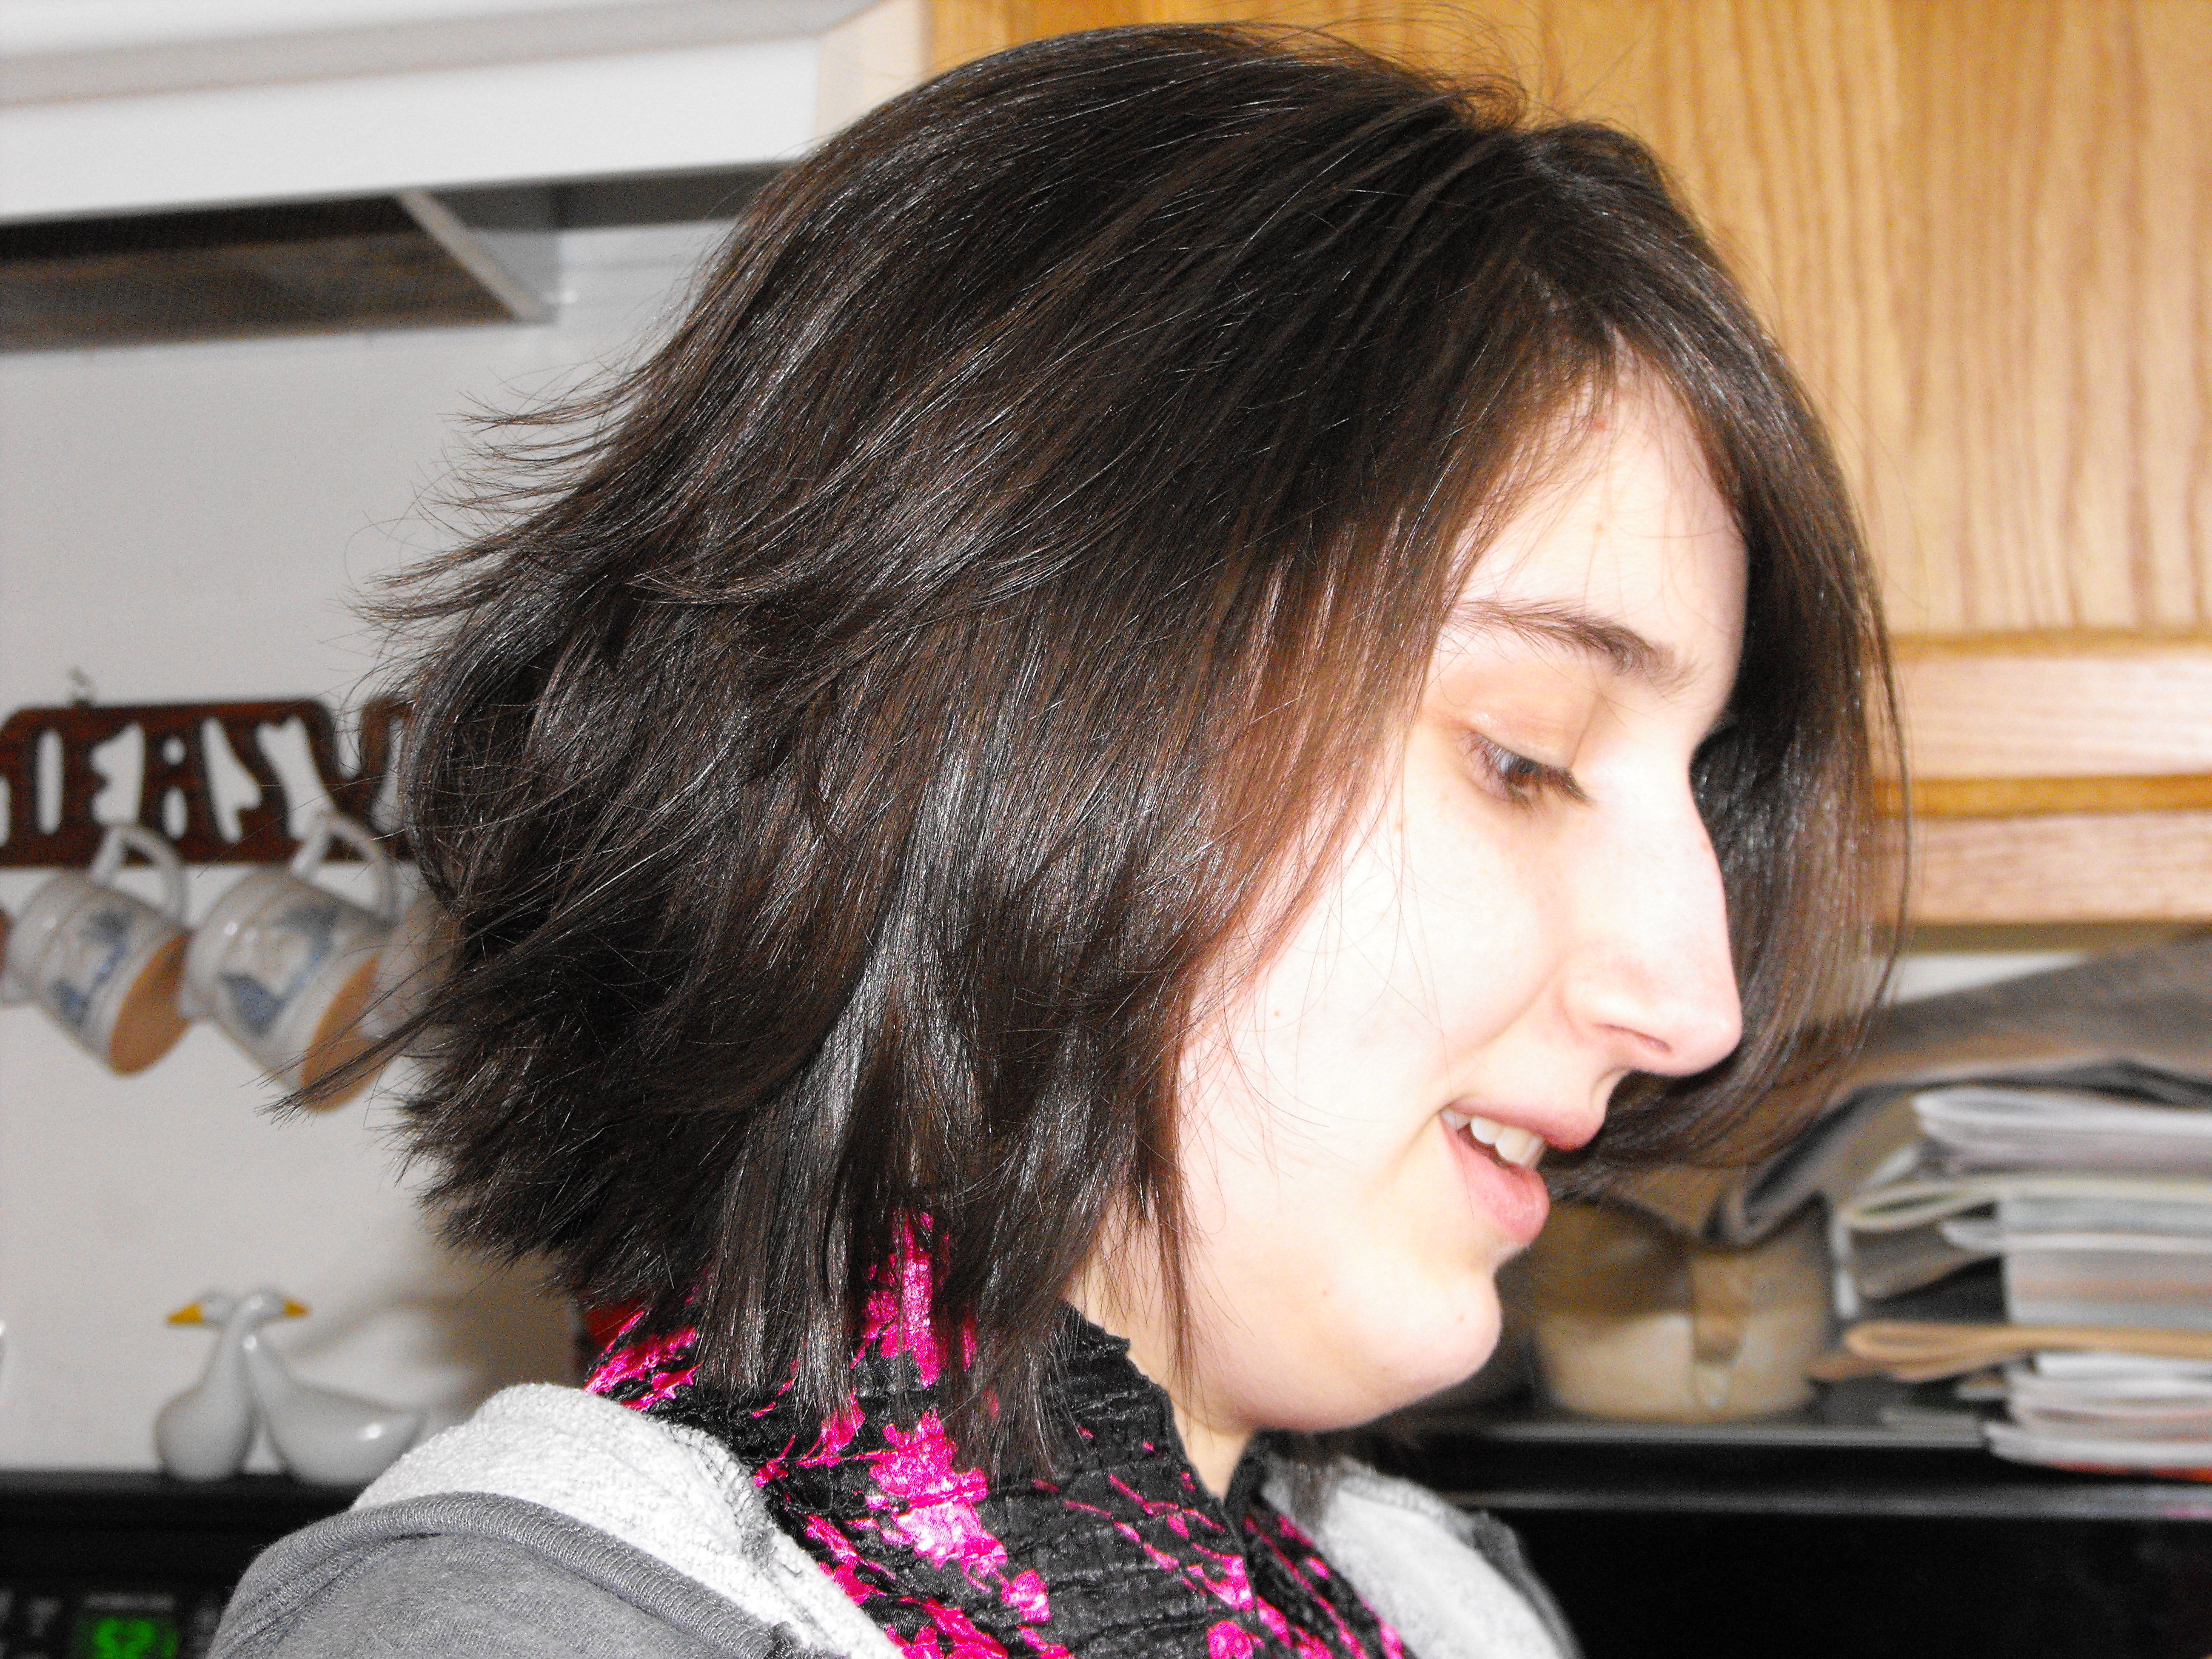 ./2009/Carina's Haircut/Carinas haircut0005.JPG